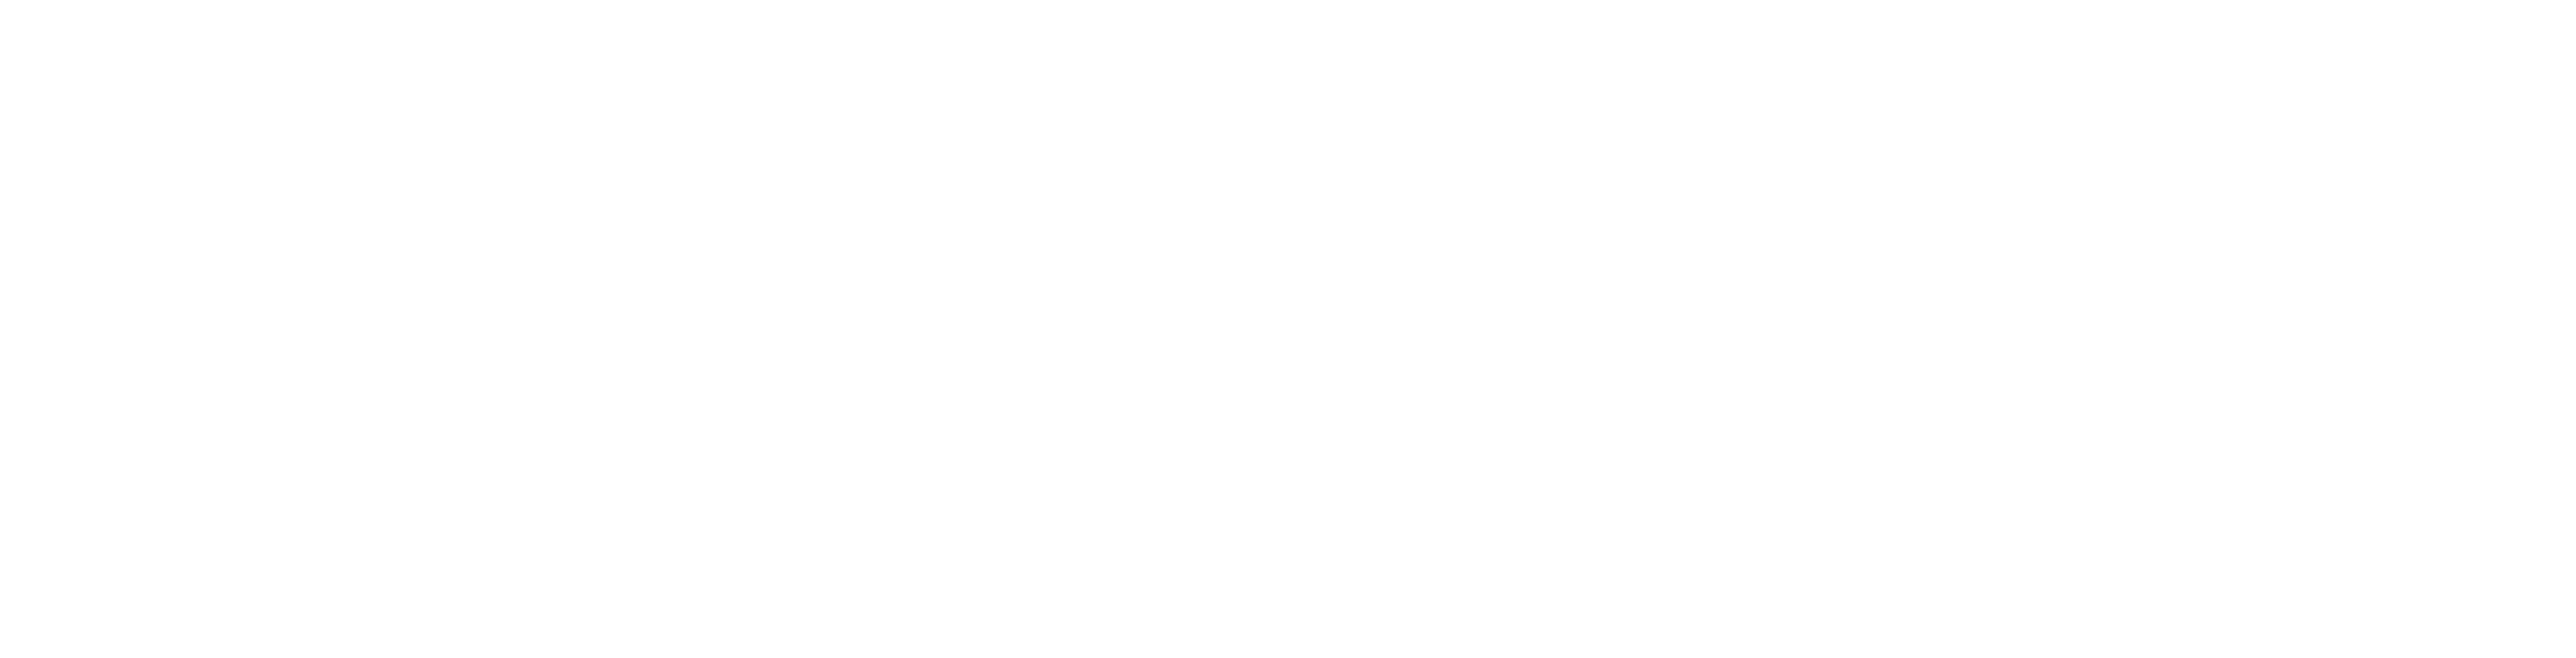 Capstonepartners-logo-horizontal-white